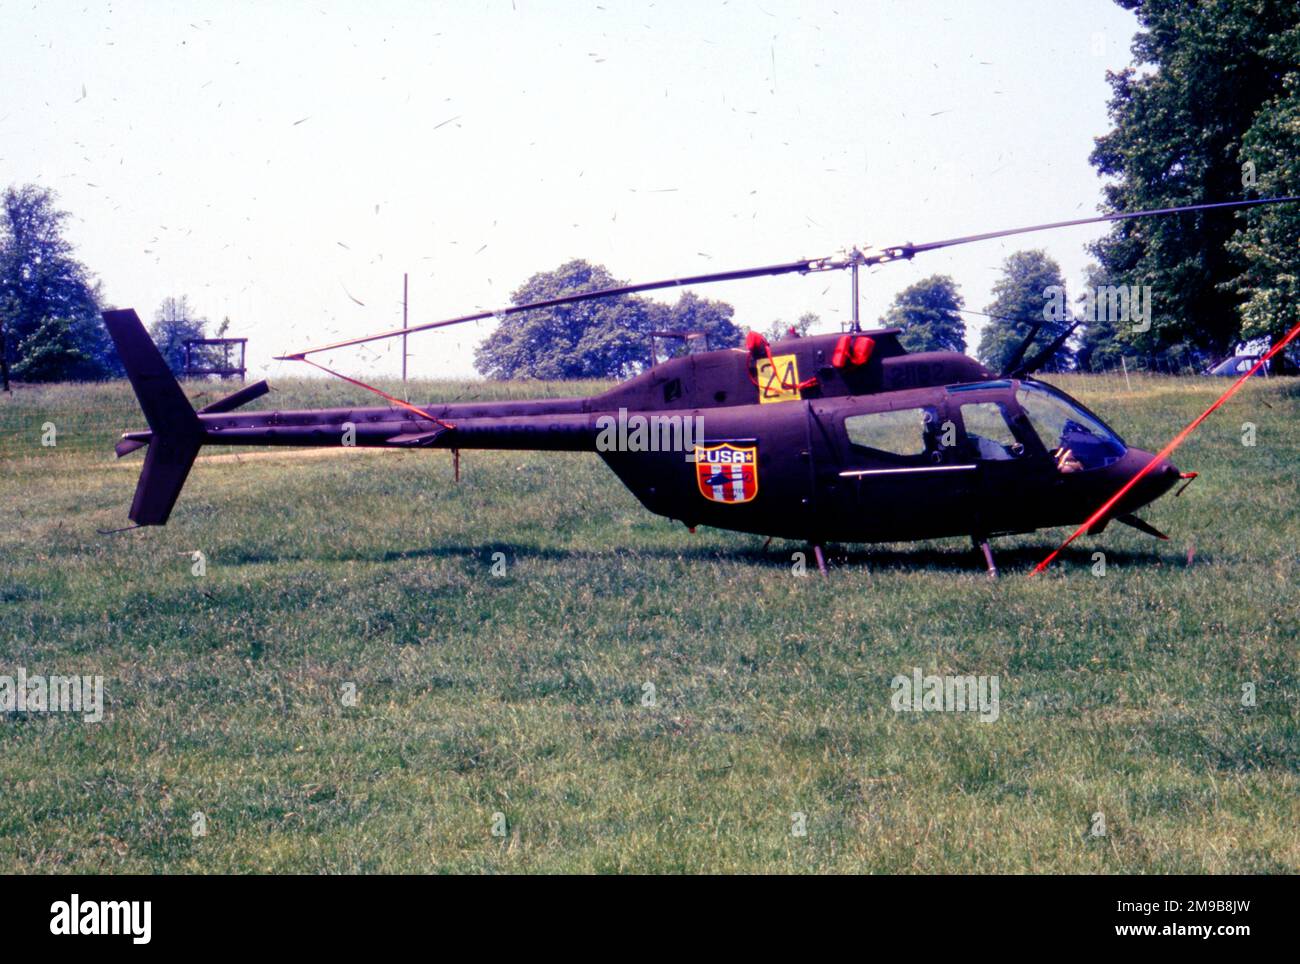 Armée des États-Unis - Bell OH-58A Kiowa 72-21182 (msn 41848), au Château Ashby pour les Championnats du monde d'hélicoptères, le 26 juin 1986, avec le numéro de compétition '24'. Banque D'Images